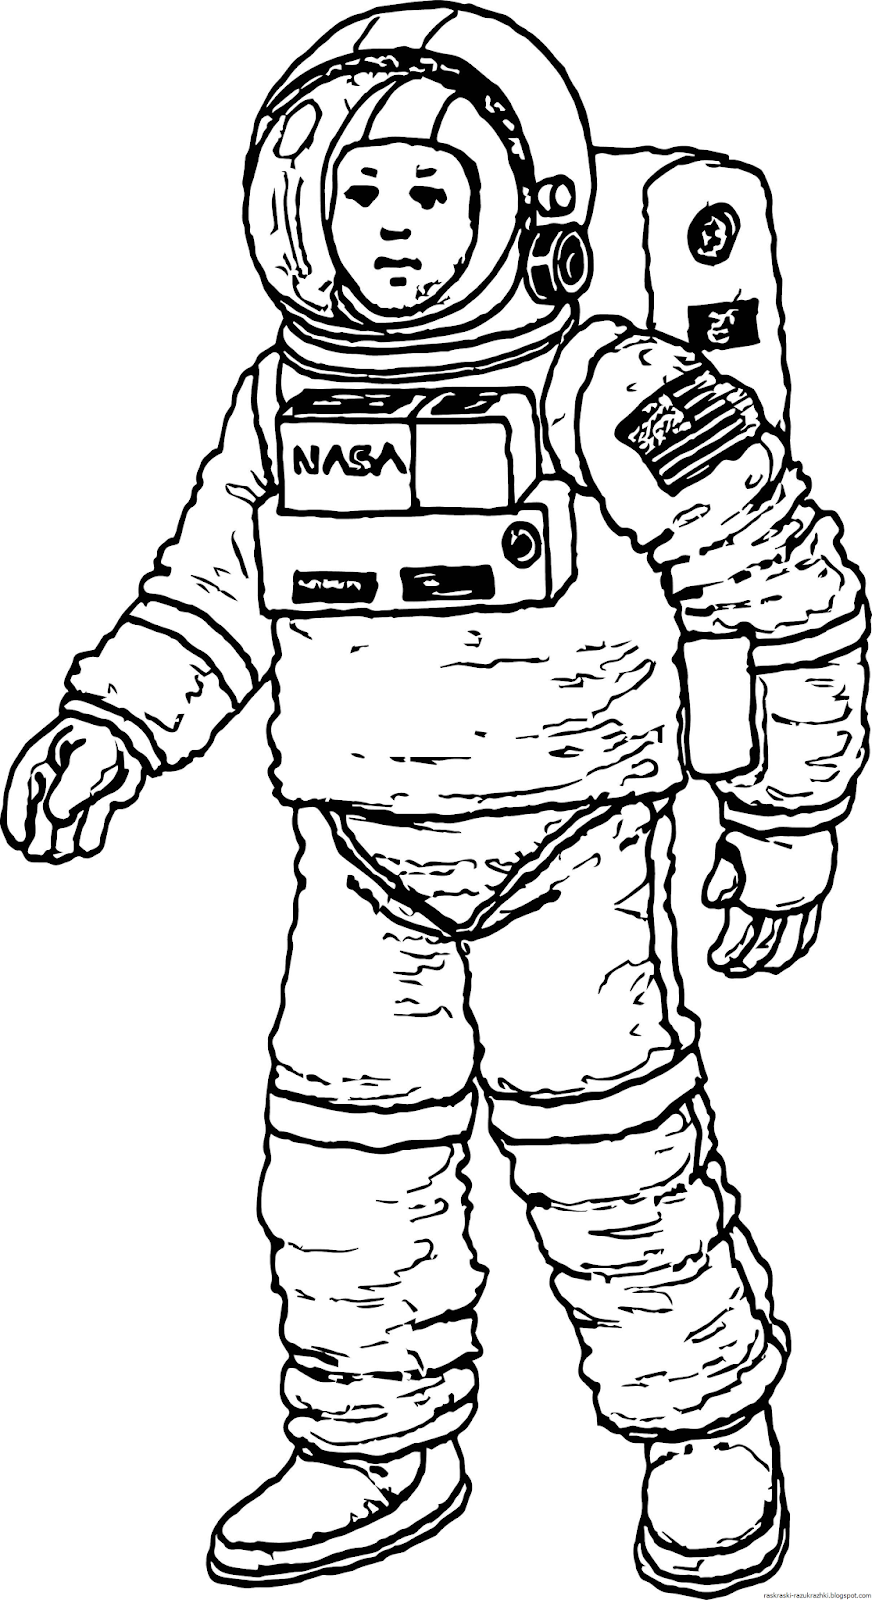 Скафандр рисунок для детей. Космонавт раскраска для детей. Раскраска про космос и Космонавтов для детей. Космонавт рисунок. Рисунок Космонавта в скафандре для детей.